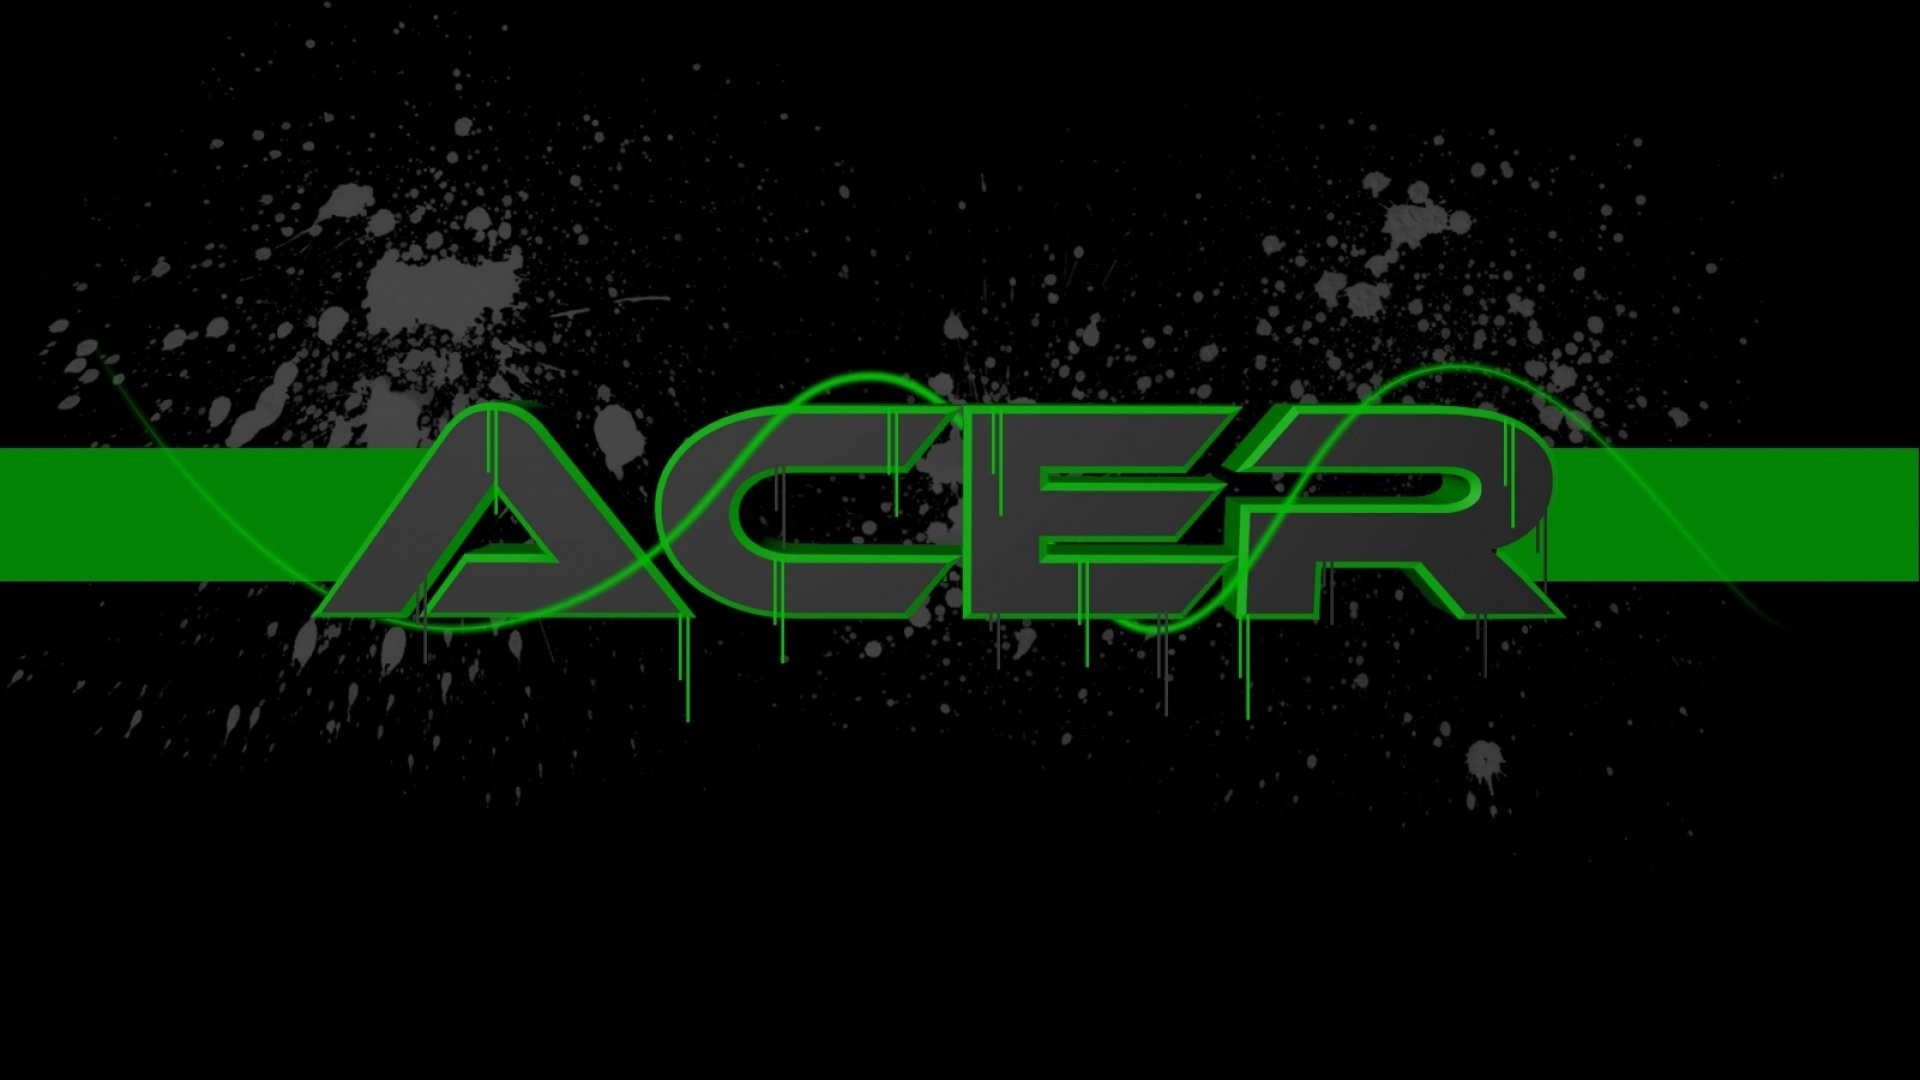 46+] Acer Wallpaper 1080p HD 1920x1080 - WallpaperSafari